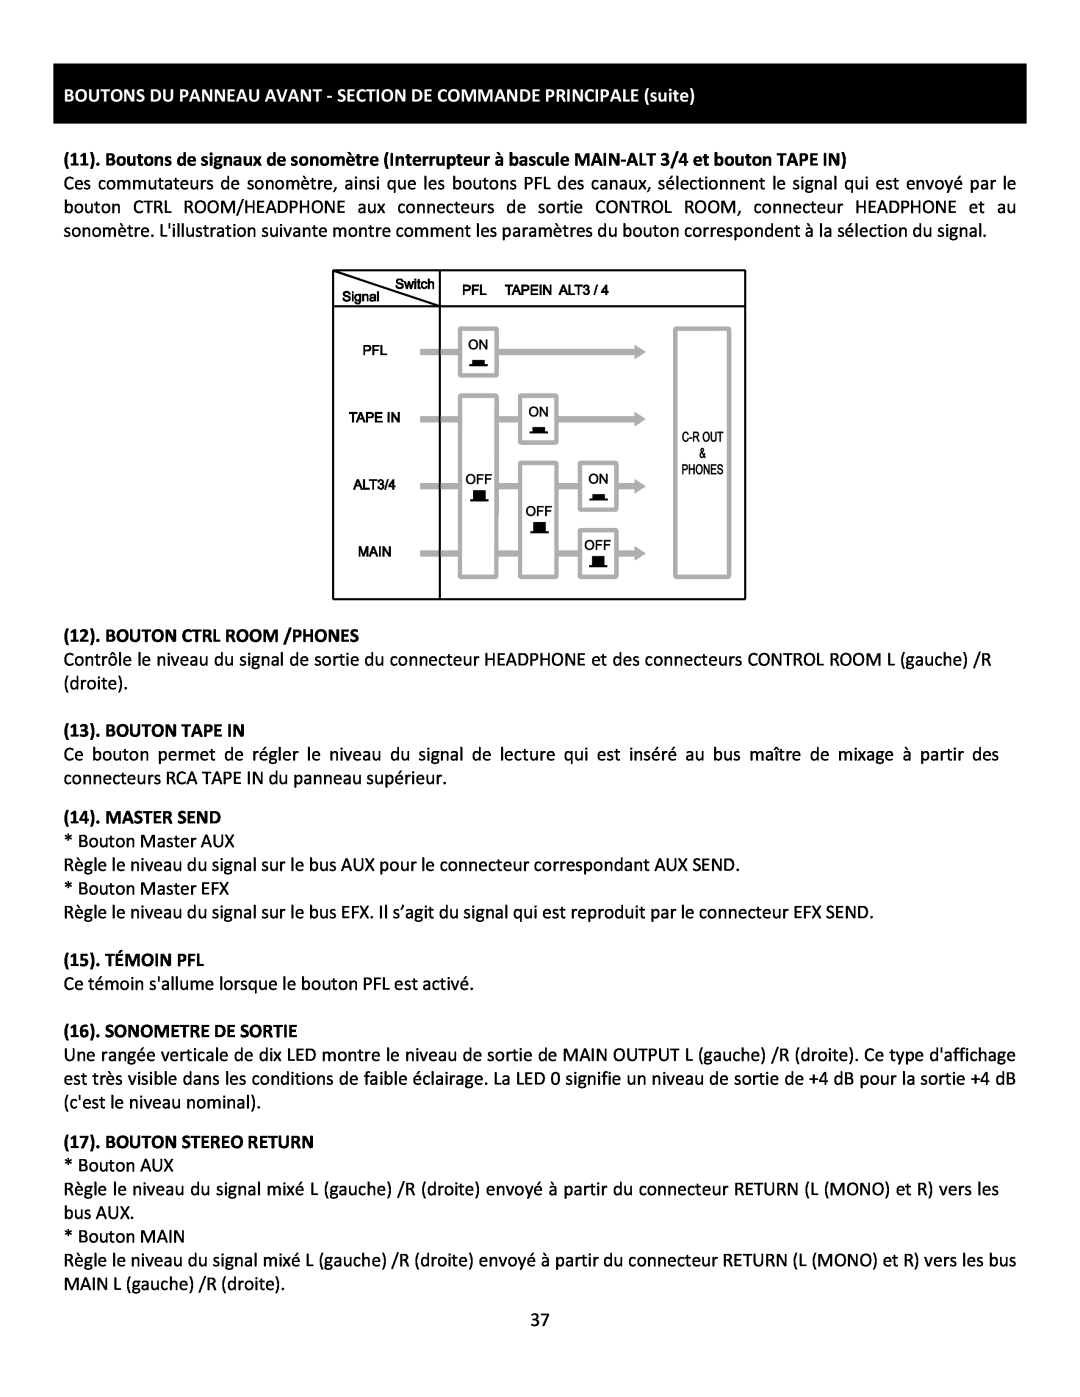 Cerwin-Vega CVM-1224FXUSB manual BOUTONS DU PANNEAU AVANT - SECTION DE COMMANDE PRINCIPALE suite, Bouton Ctrl Room /Phones 